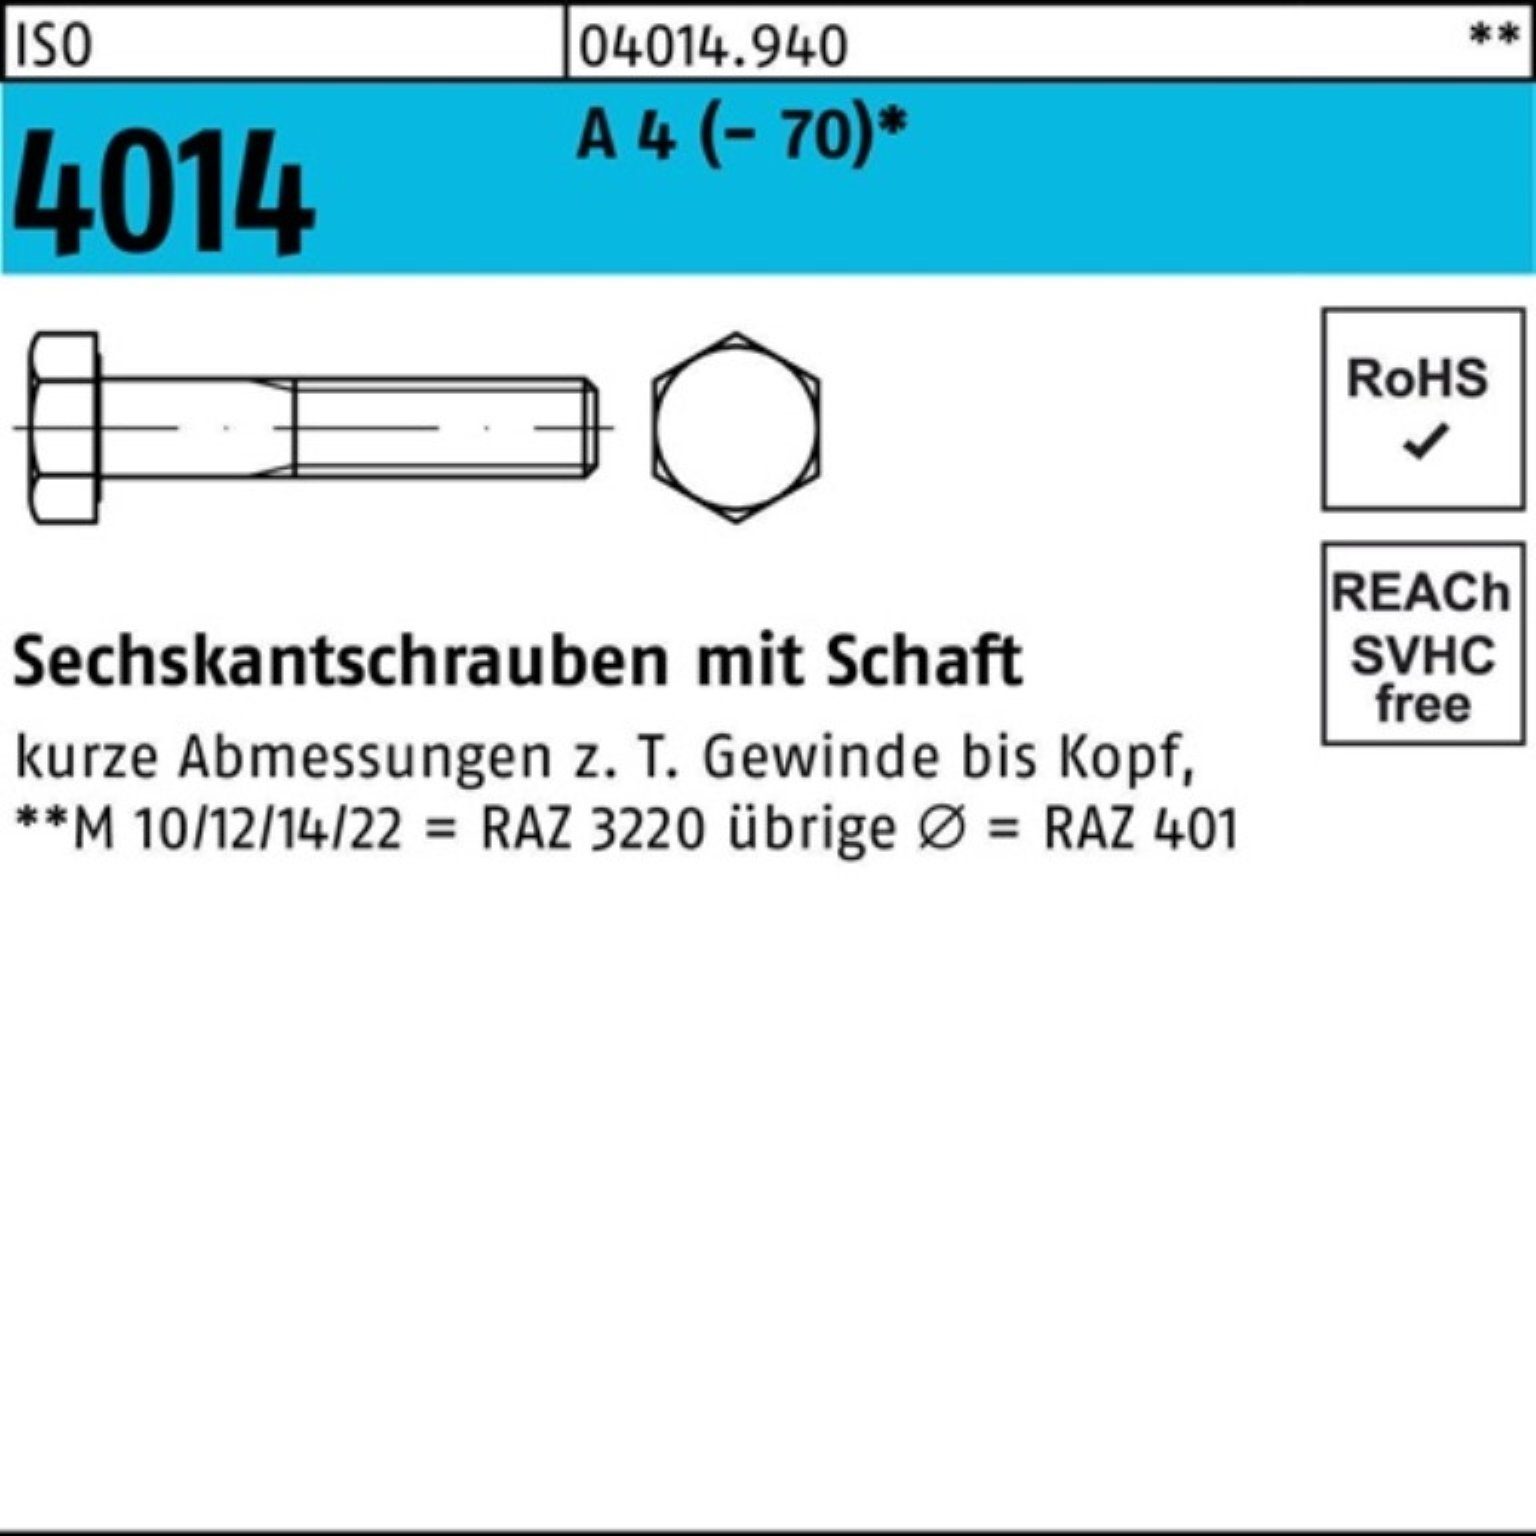 A Pack Sechskantschraube St 1 100er ISO M20x 4 Sechskantschraube Bufab 120 4014 Schaft (70)